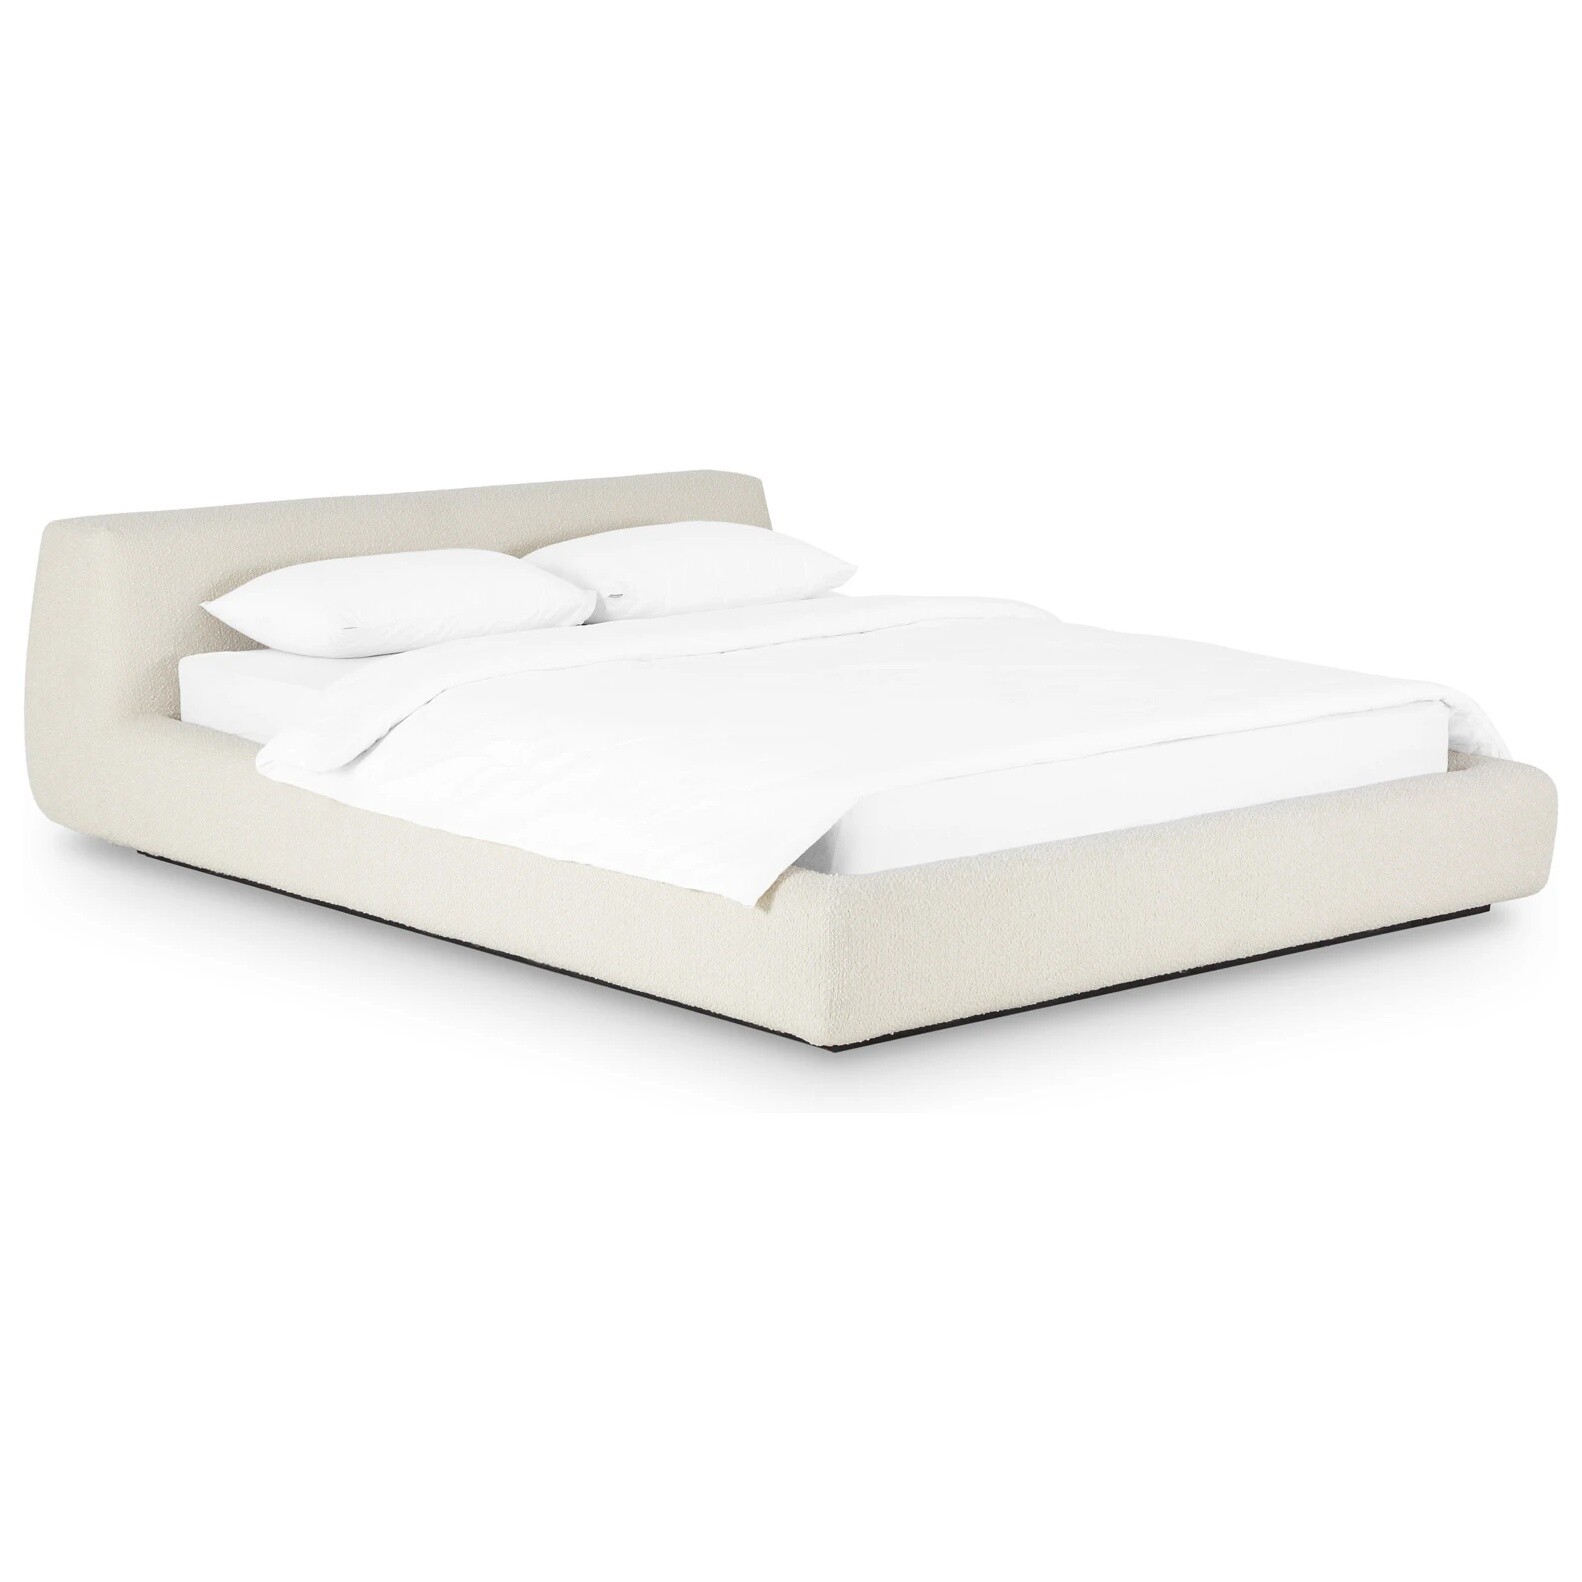 Кровать полутораспальная со съемным чехлом букле 140х200 см белая Vatta Buckle whitte